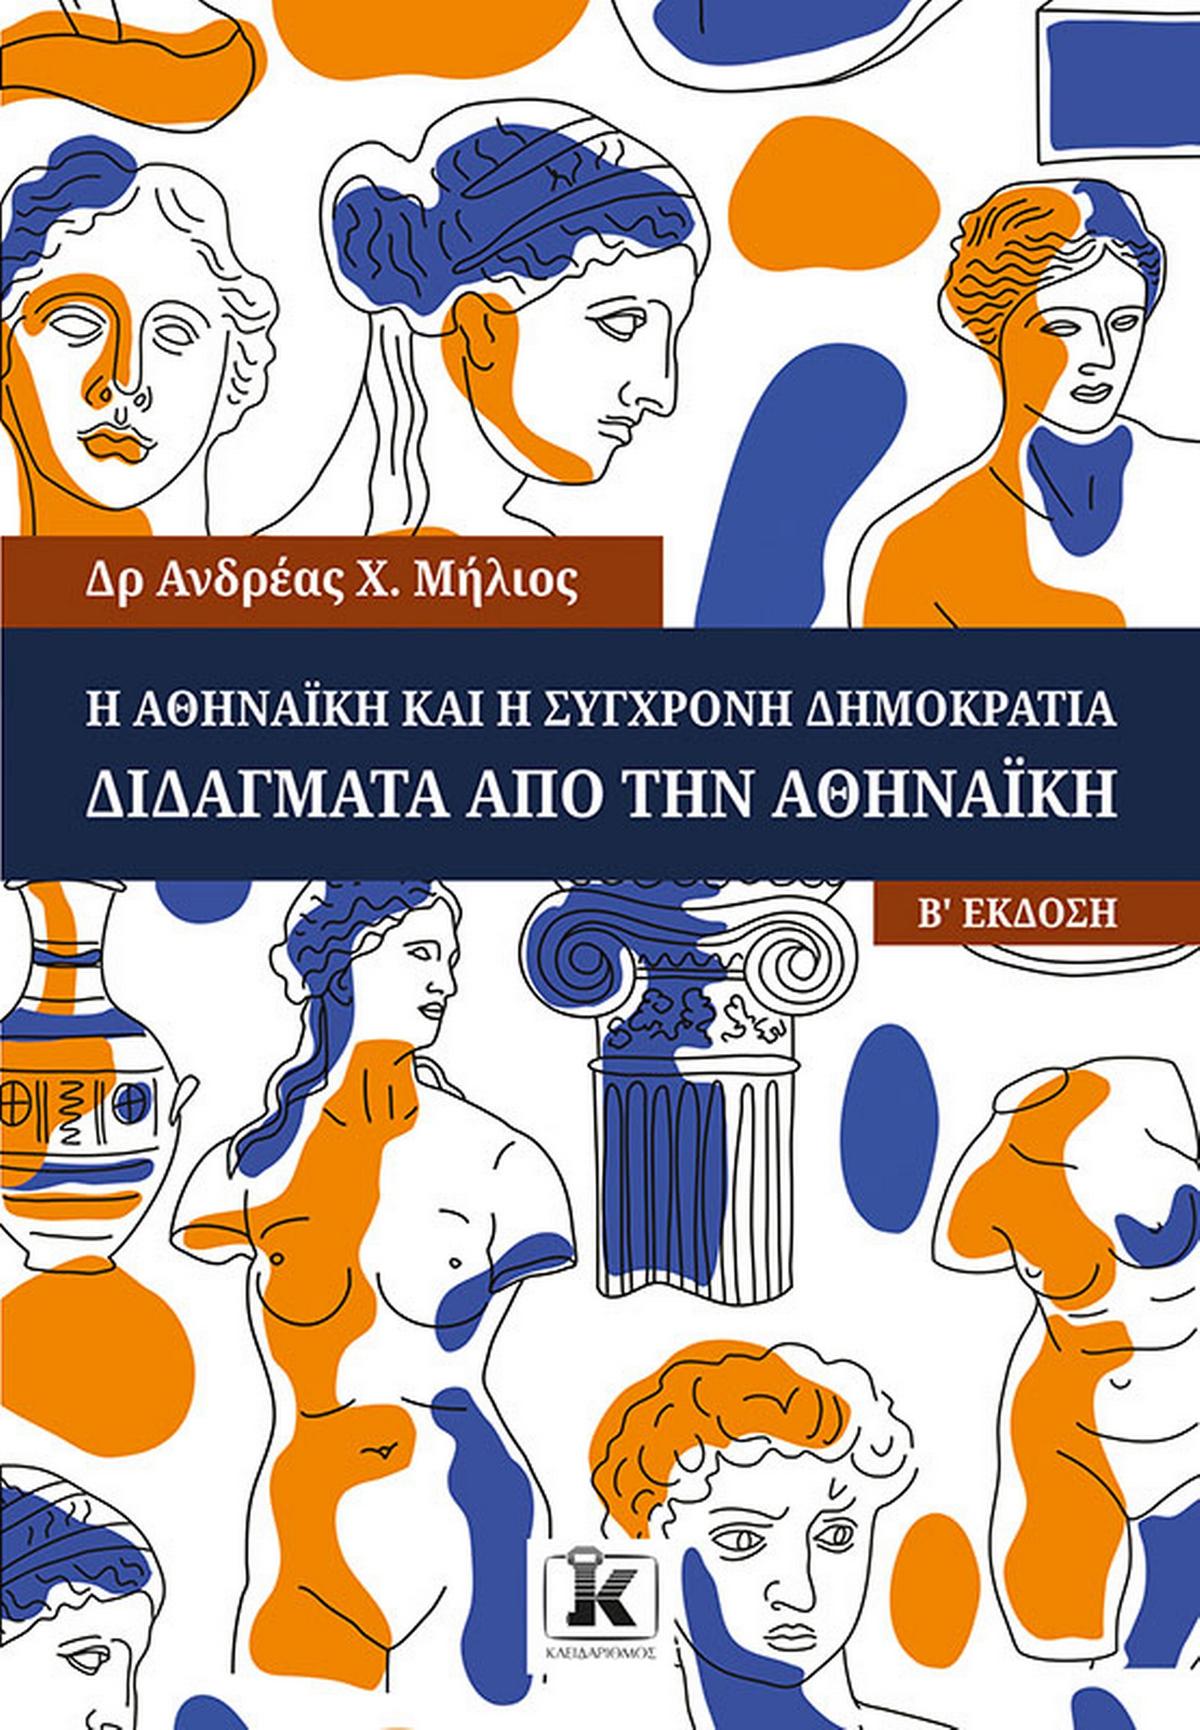 Η Αθηναϊκή και η σύγχρονη δημοκρατία